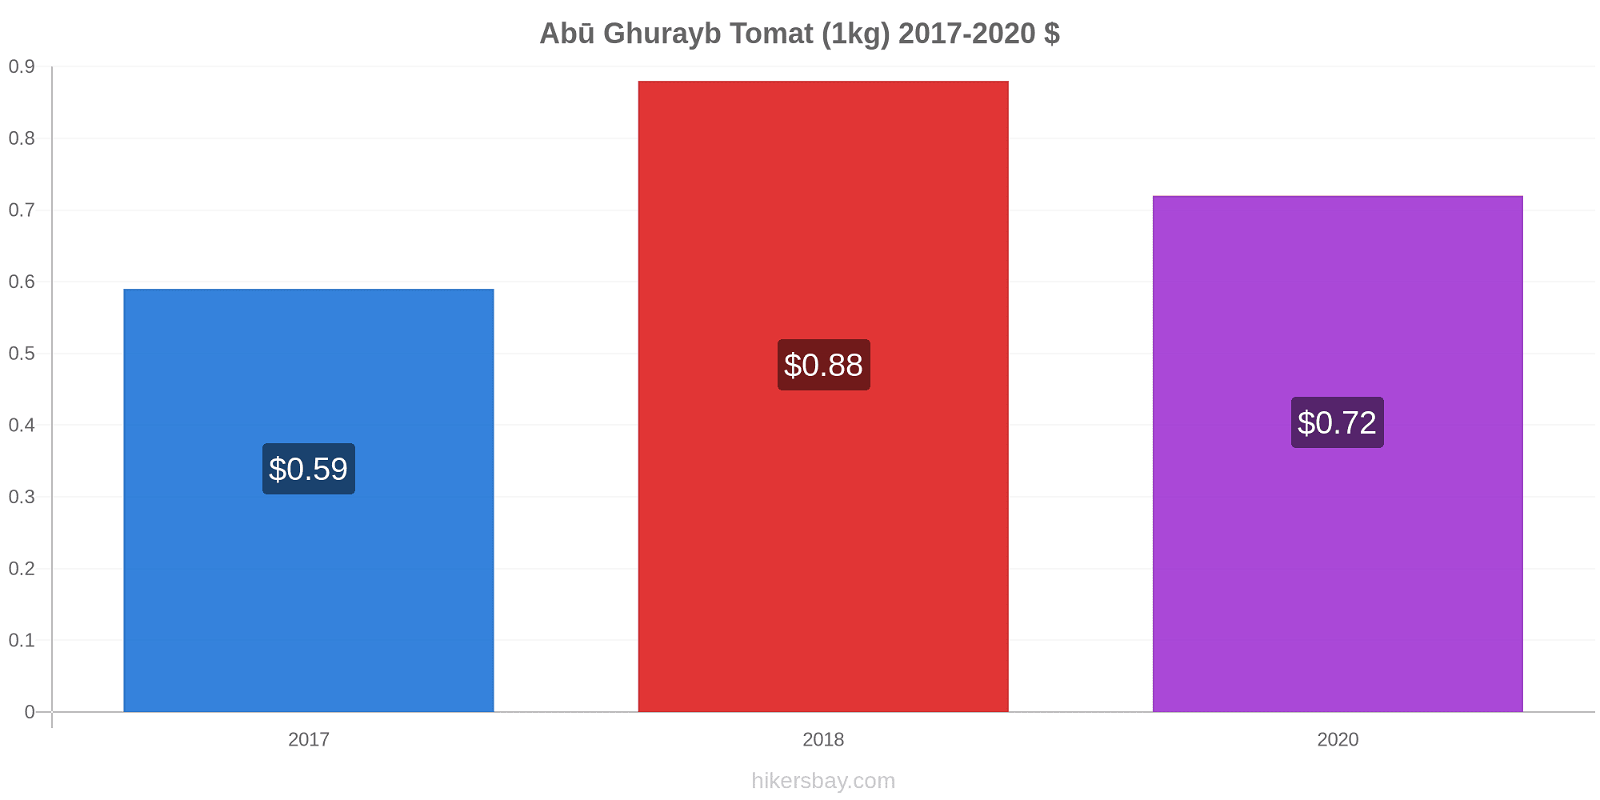 Abū Ghurayb prisförändringar Tomat (1kg) hikersbay.com